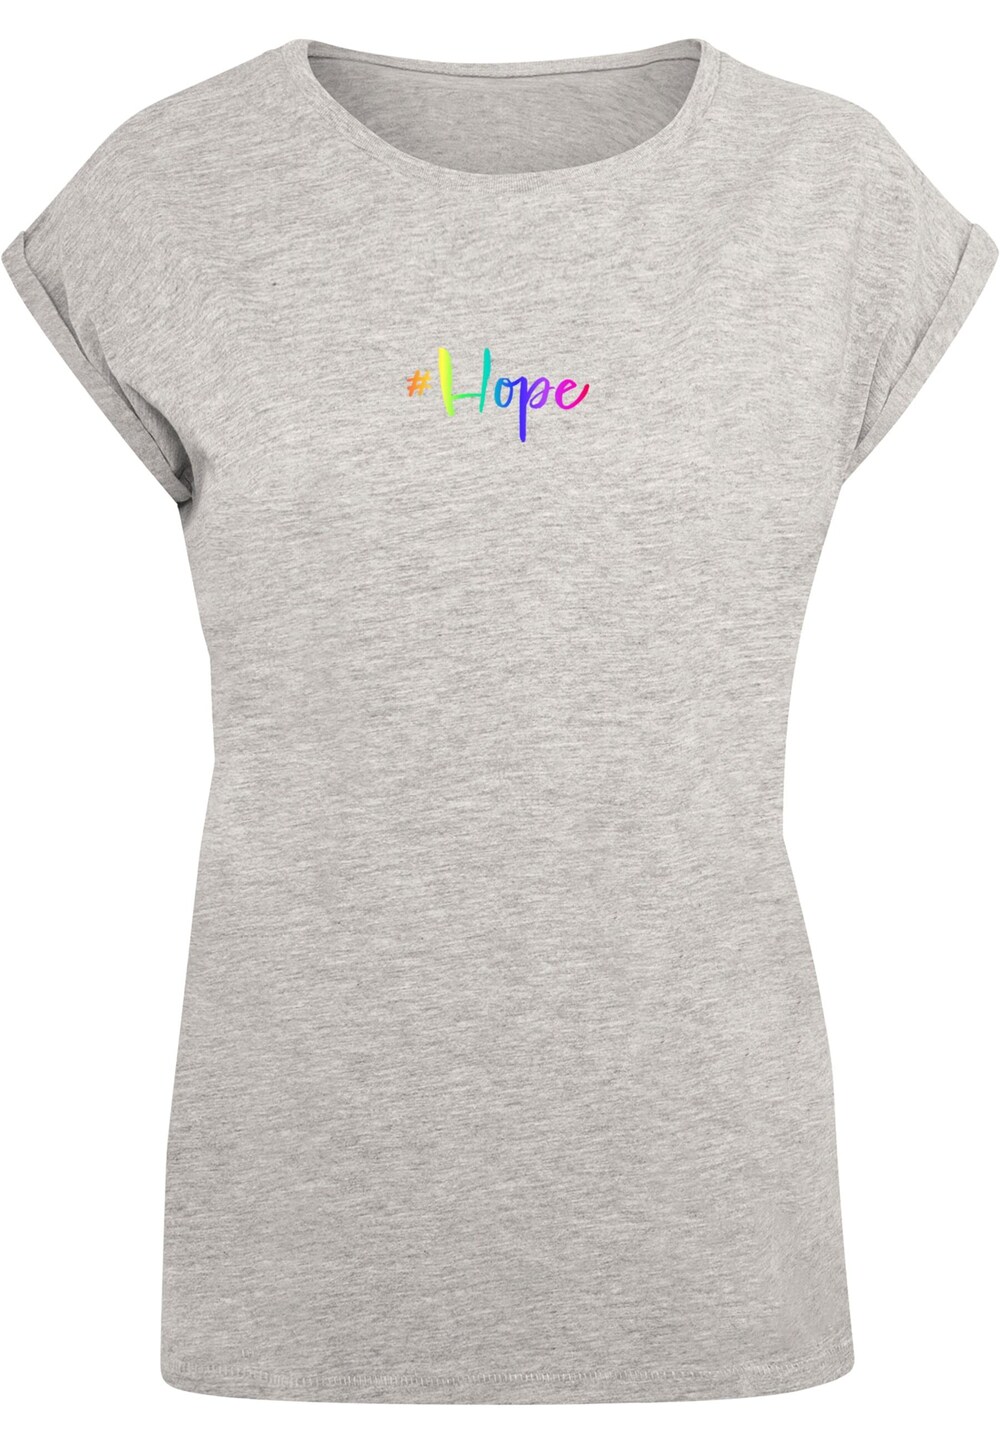 Рубашка Merchcode Hope Rainbow, пестрый серый